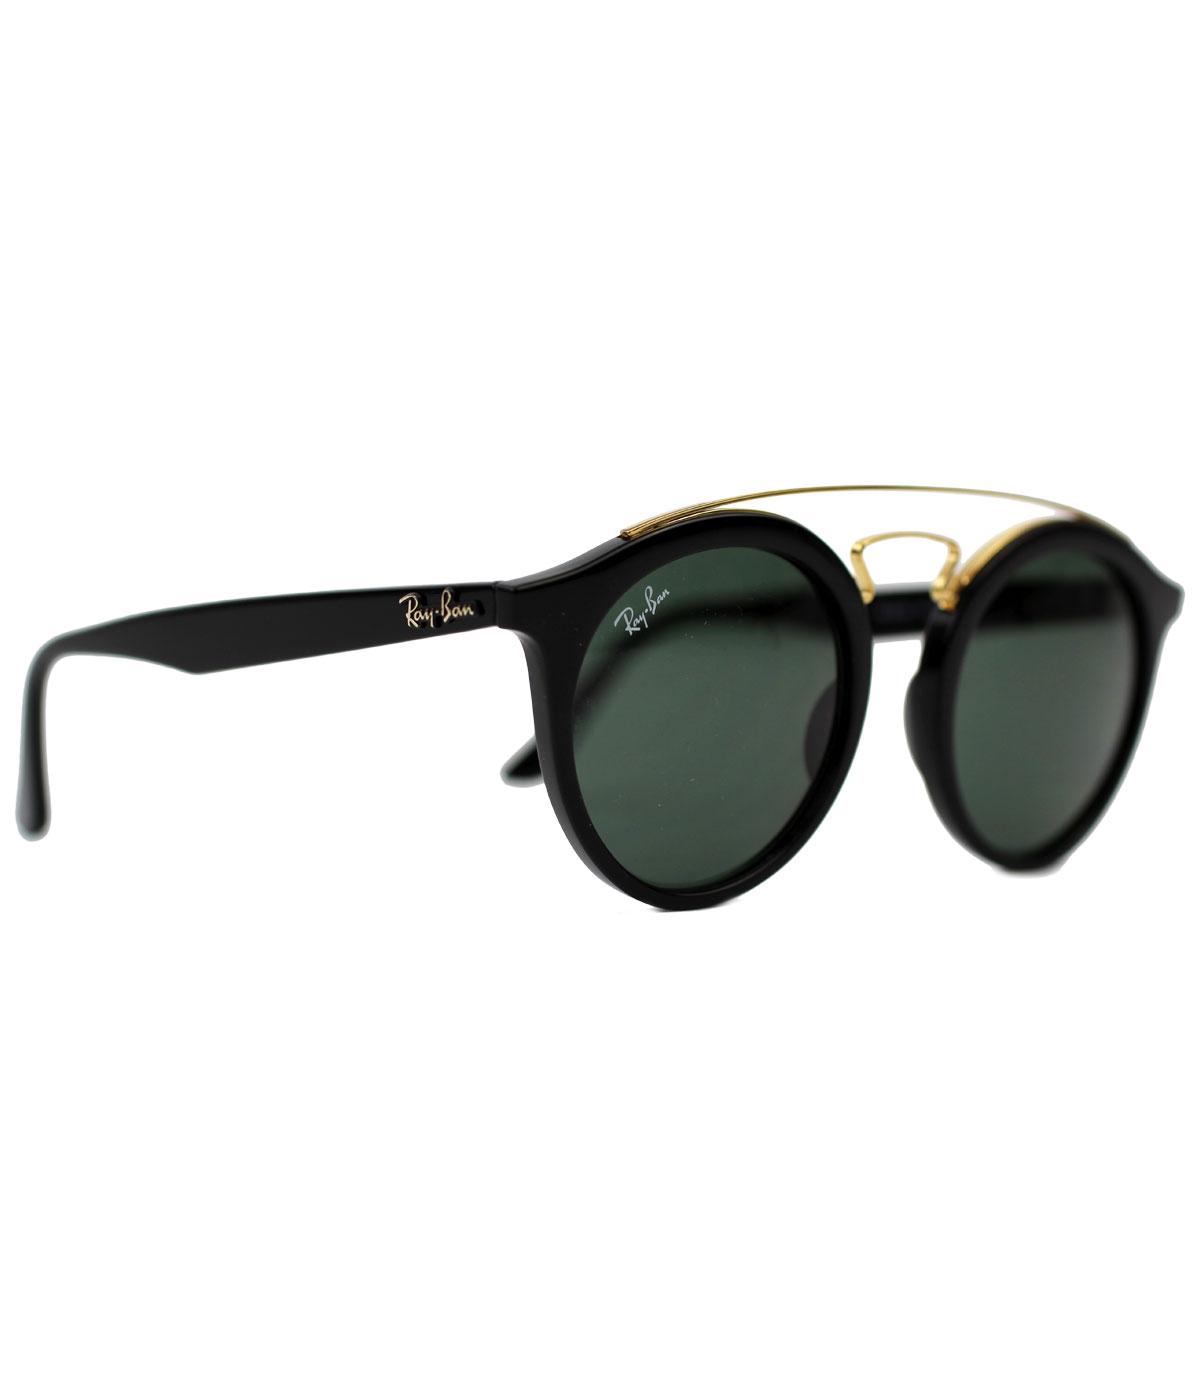 RAY-BAN Retro Mod 60s Round Clubmaster Sunglasses in Black